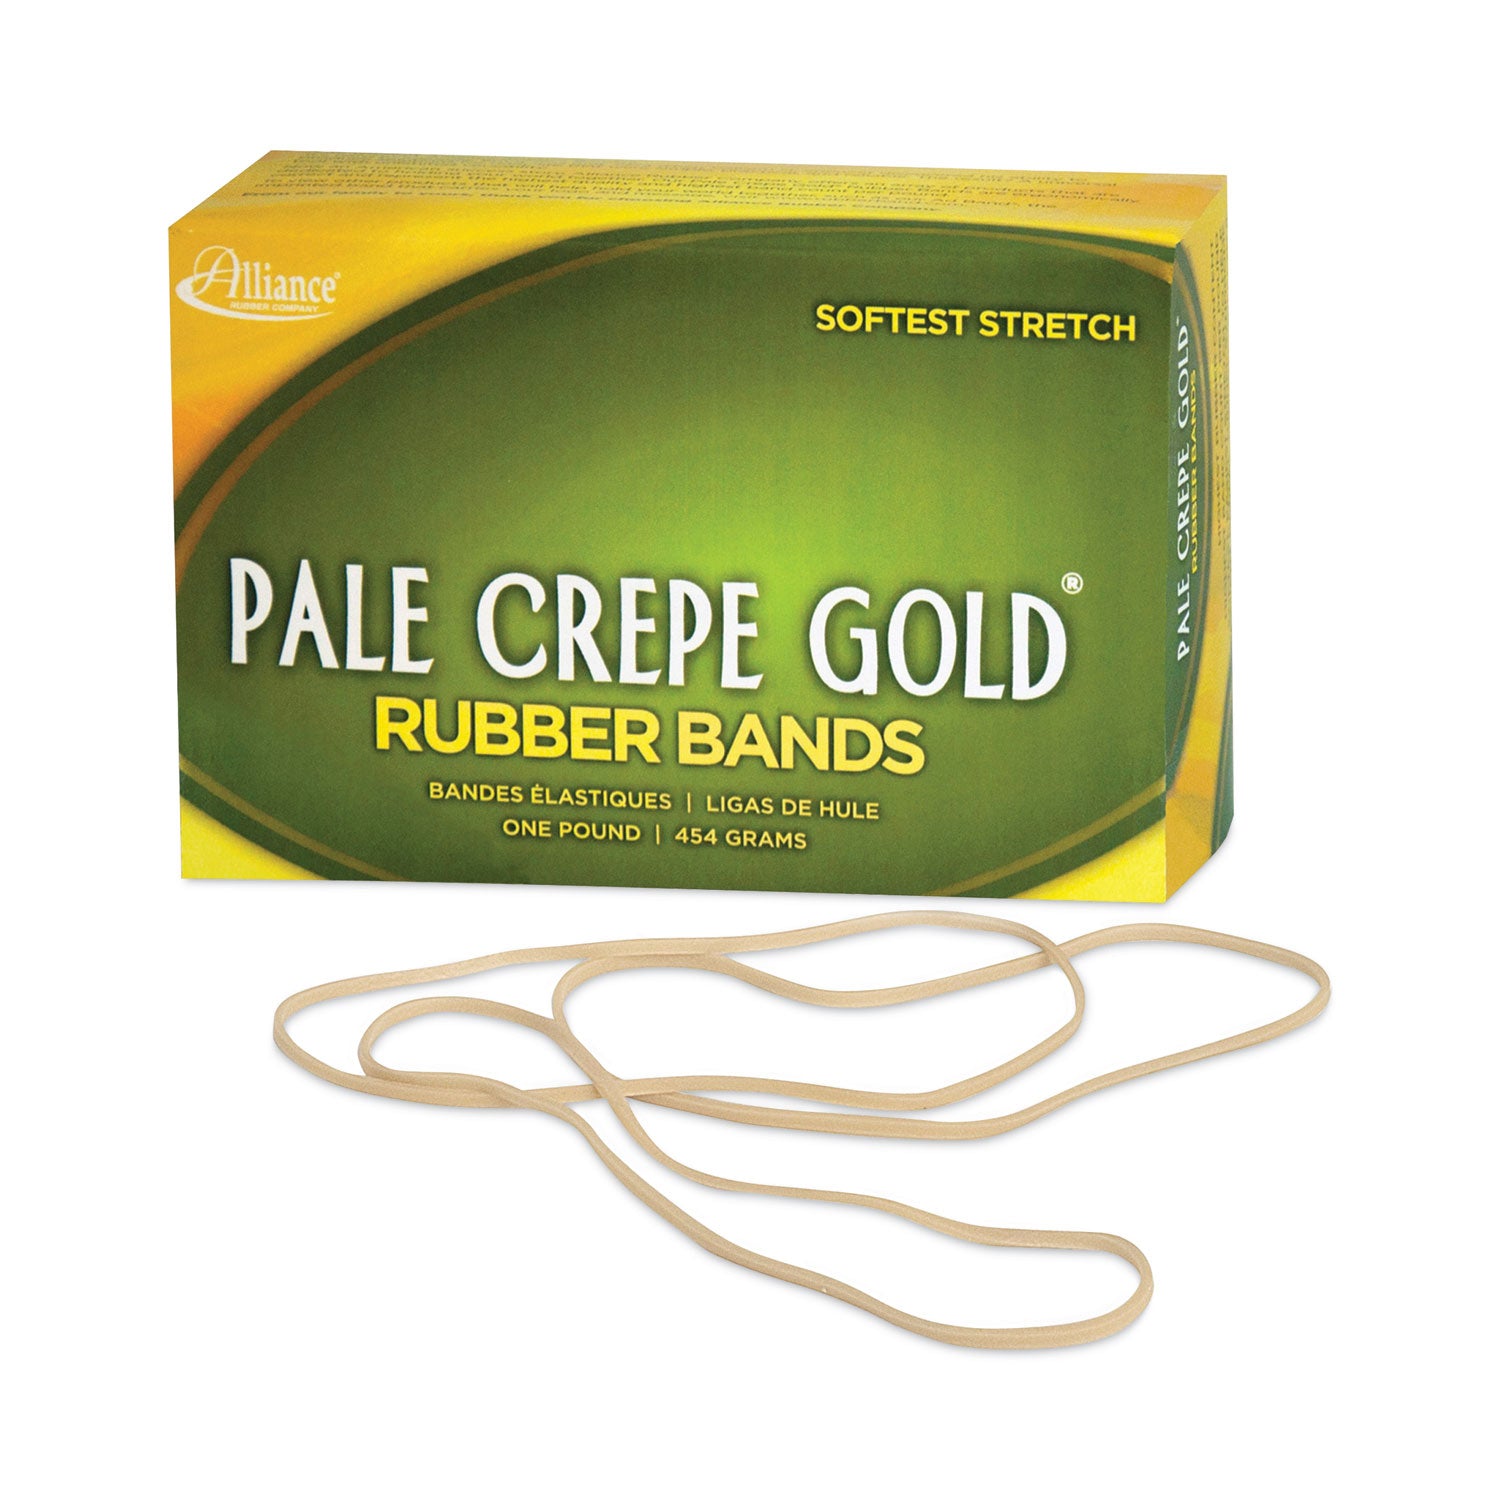 Pale Crepe Gold Rubber Bands, Size 117B, 0.06" Gauge, Golden Crepe, 1 lb Box, 300/Box - 